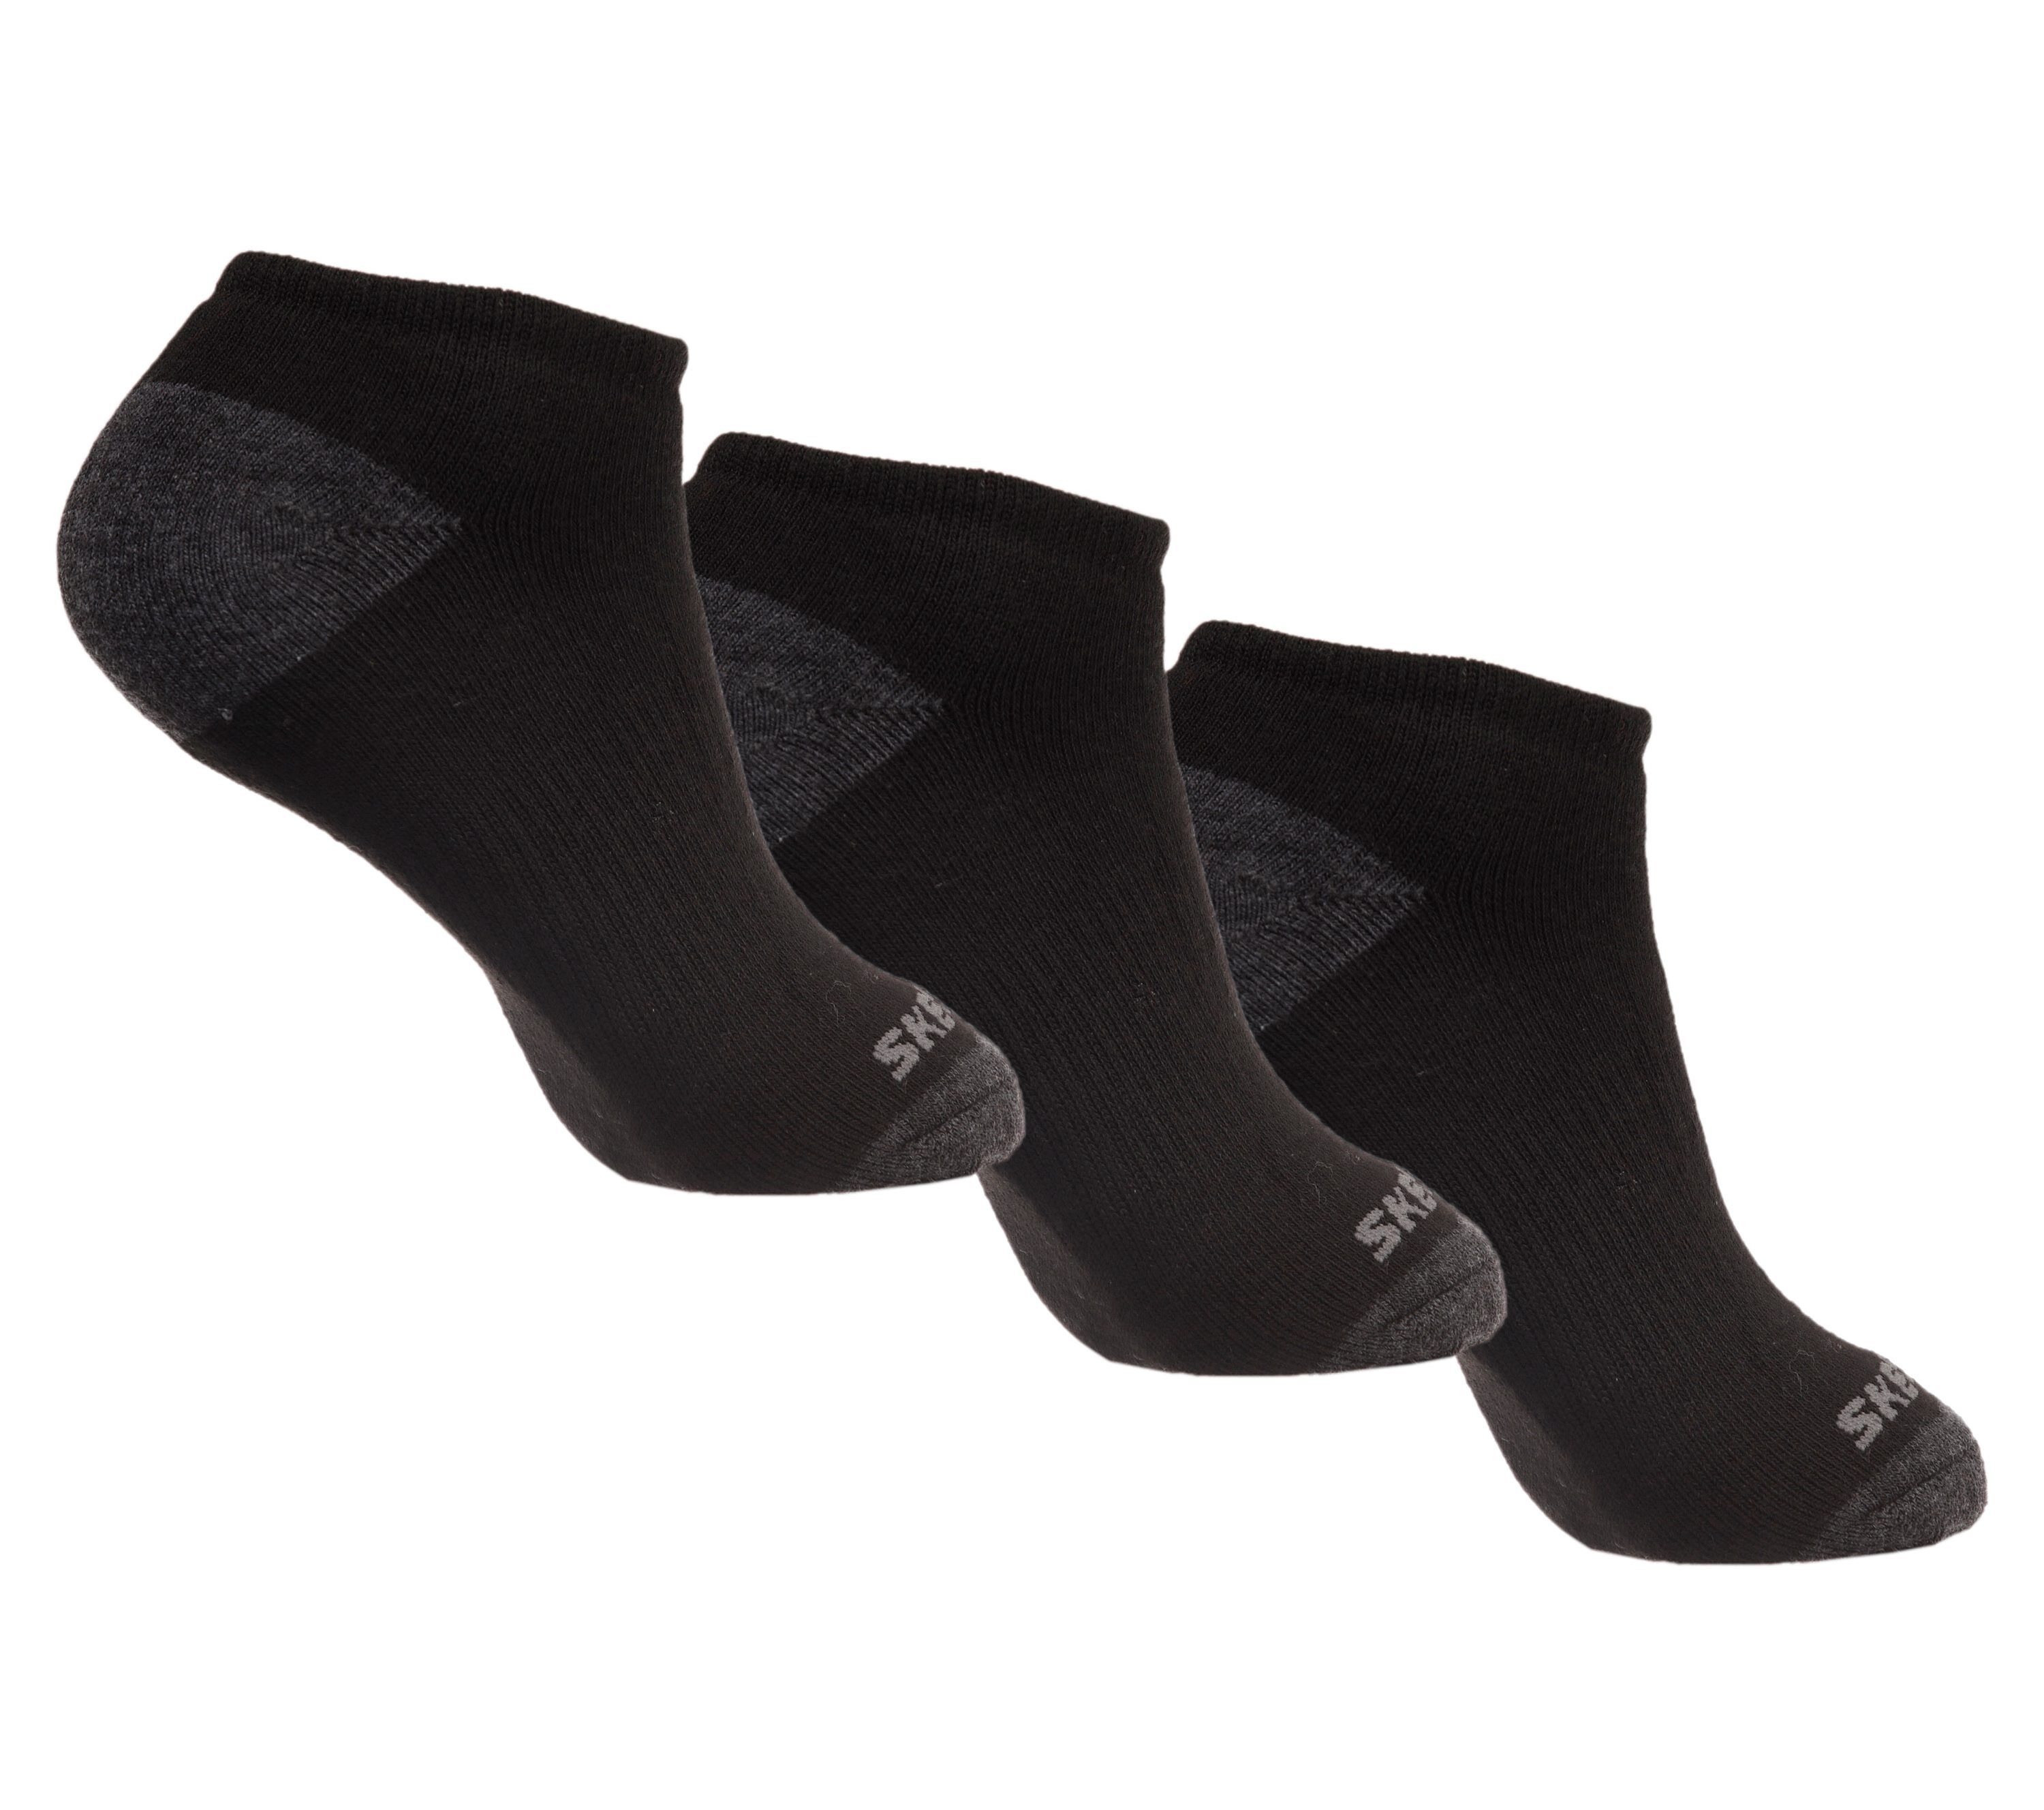 Low Walking Cut | Skechers Mall Pack 6 America® of Socks